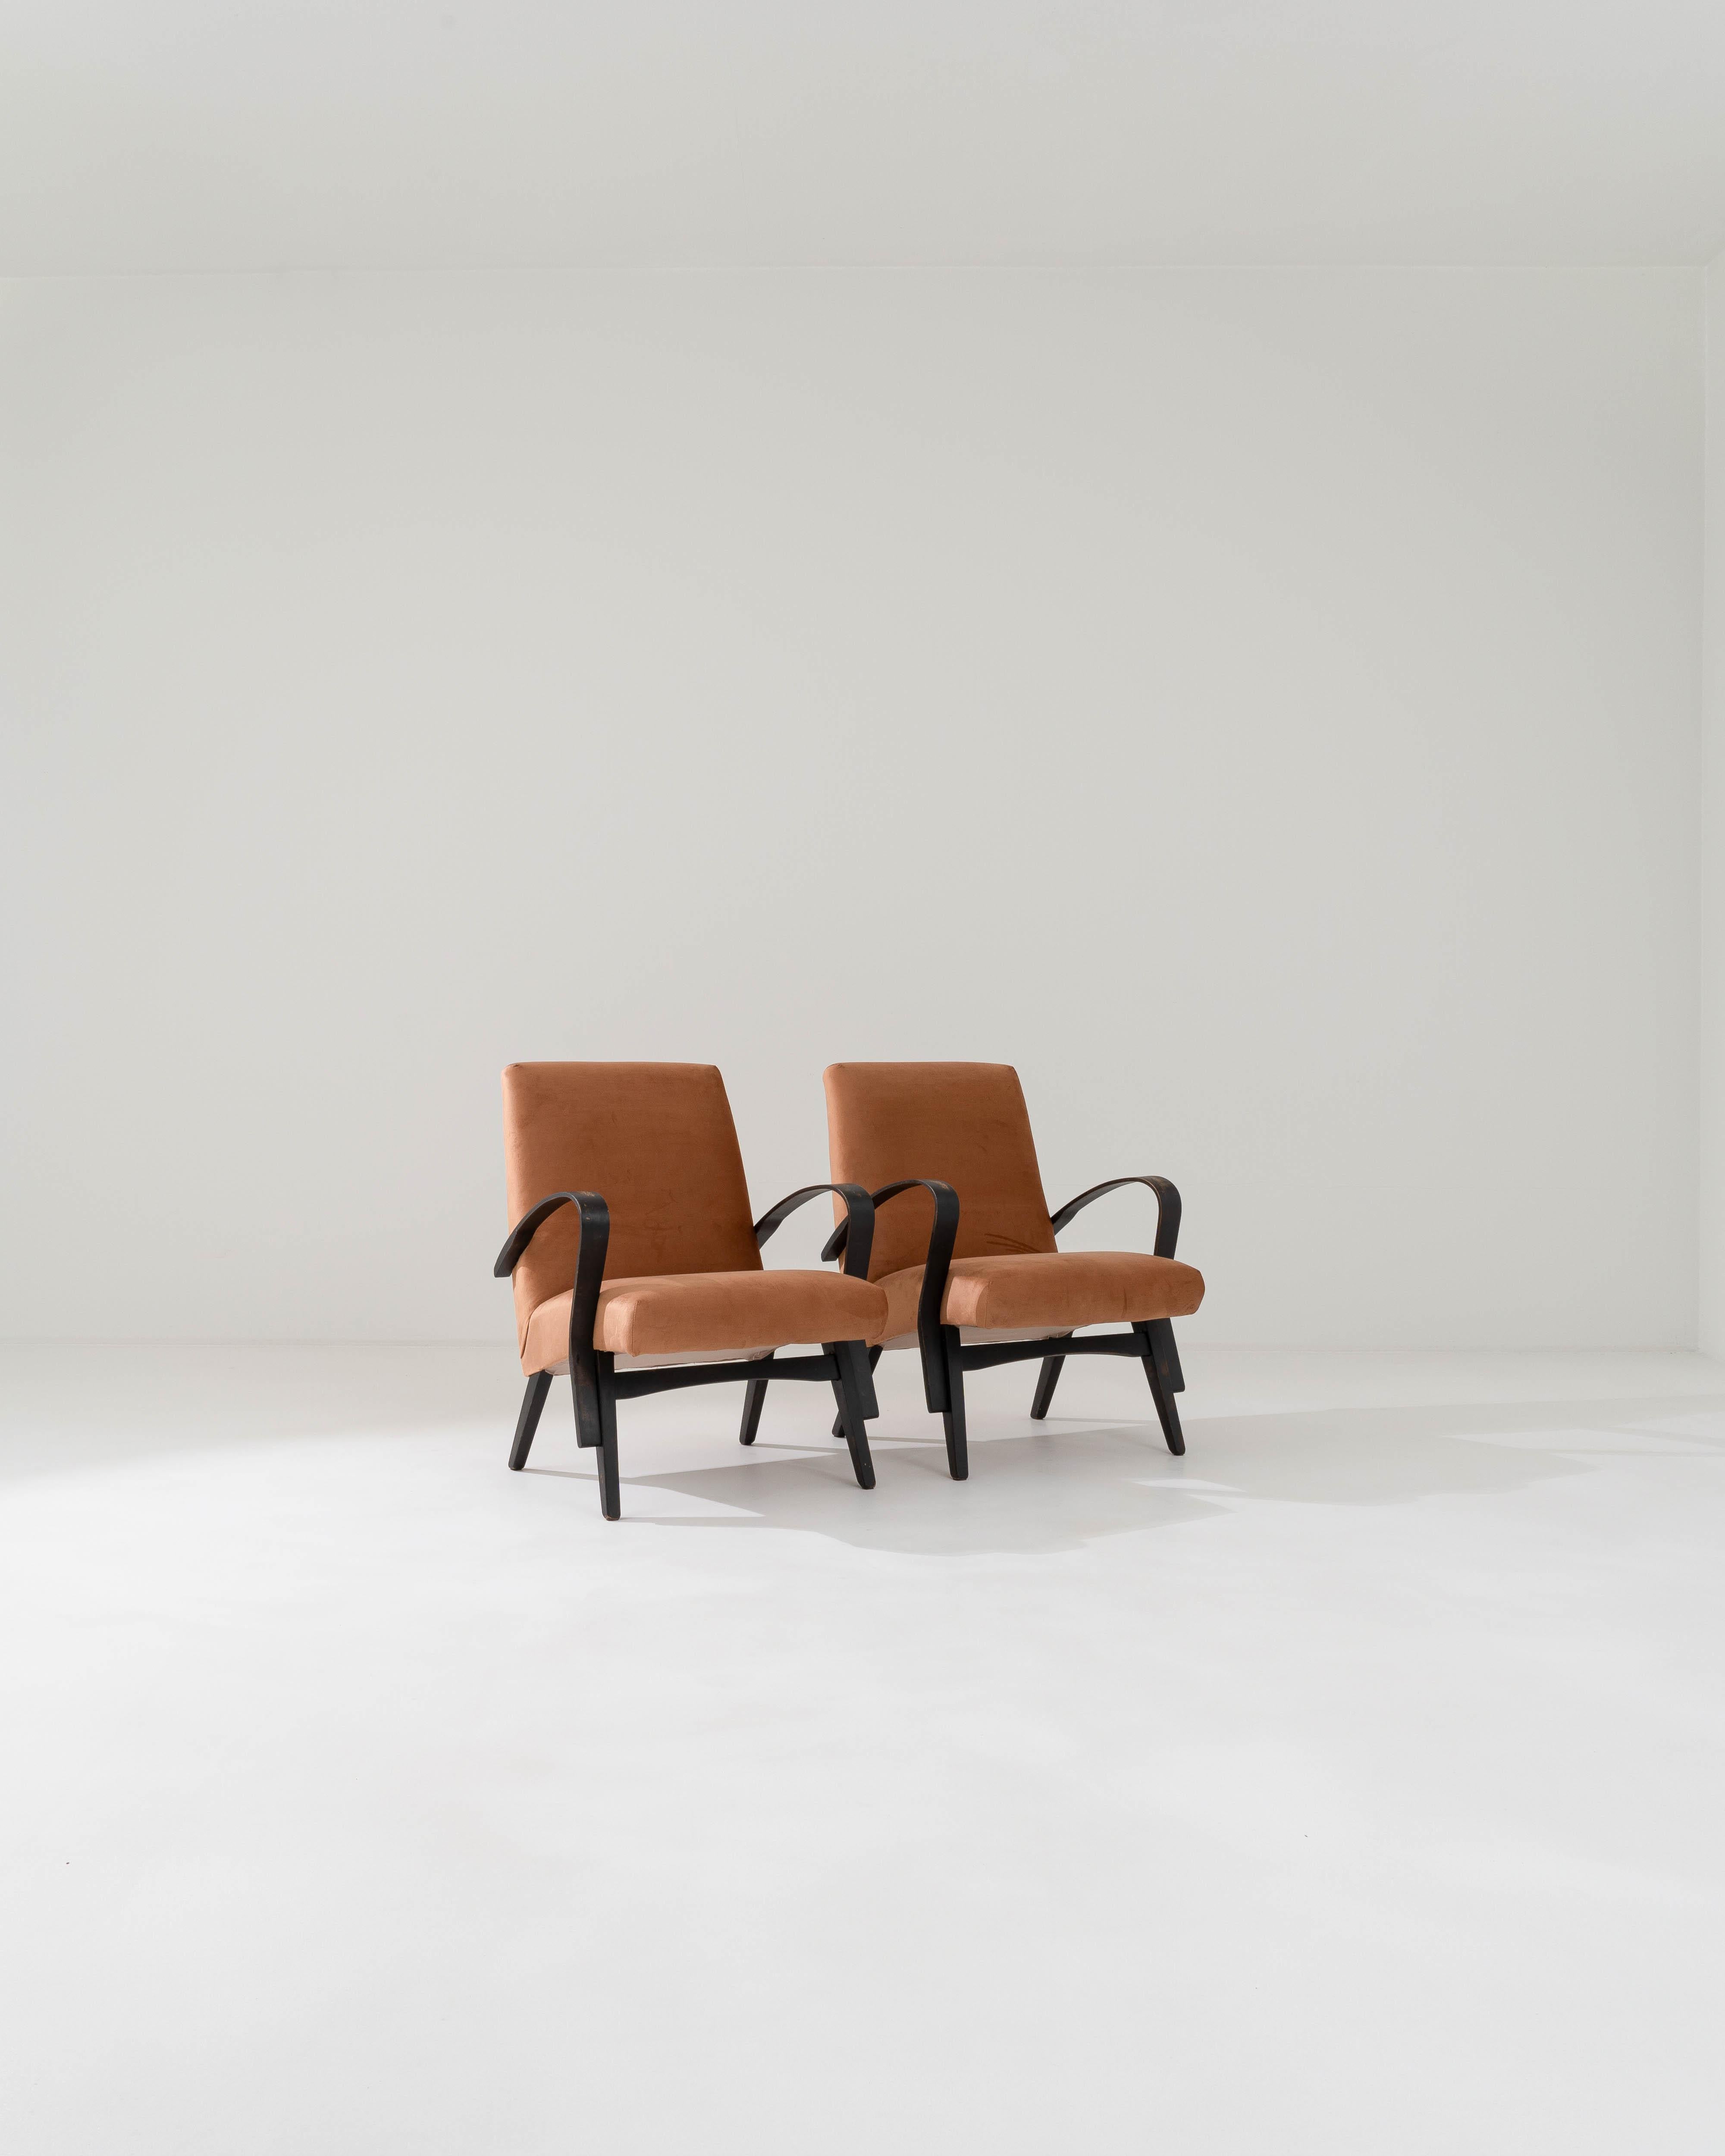 Caractérisés par les lignes épurées qui définissent leur silhouette minimaliste, ces fauteuils ont été fabriqués par l'emblématique marque tchèque, dont le design est attribué à František Jirák, dans les années 1960. Les surfaces lisses et profilées